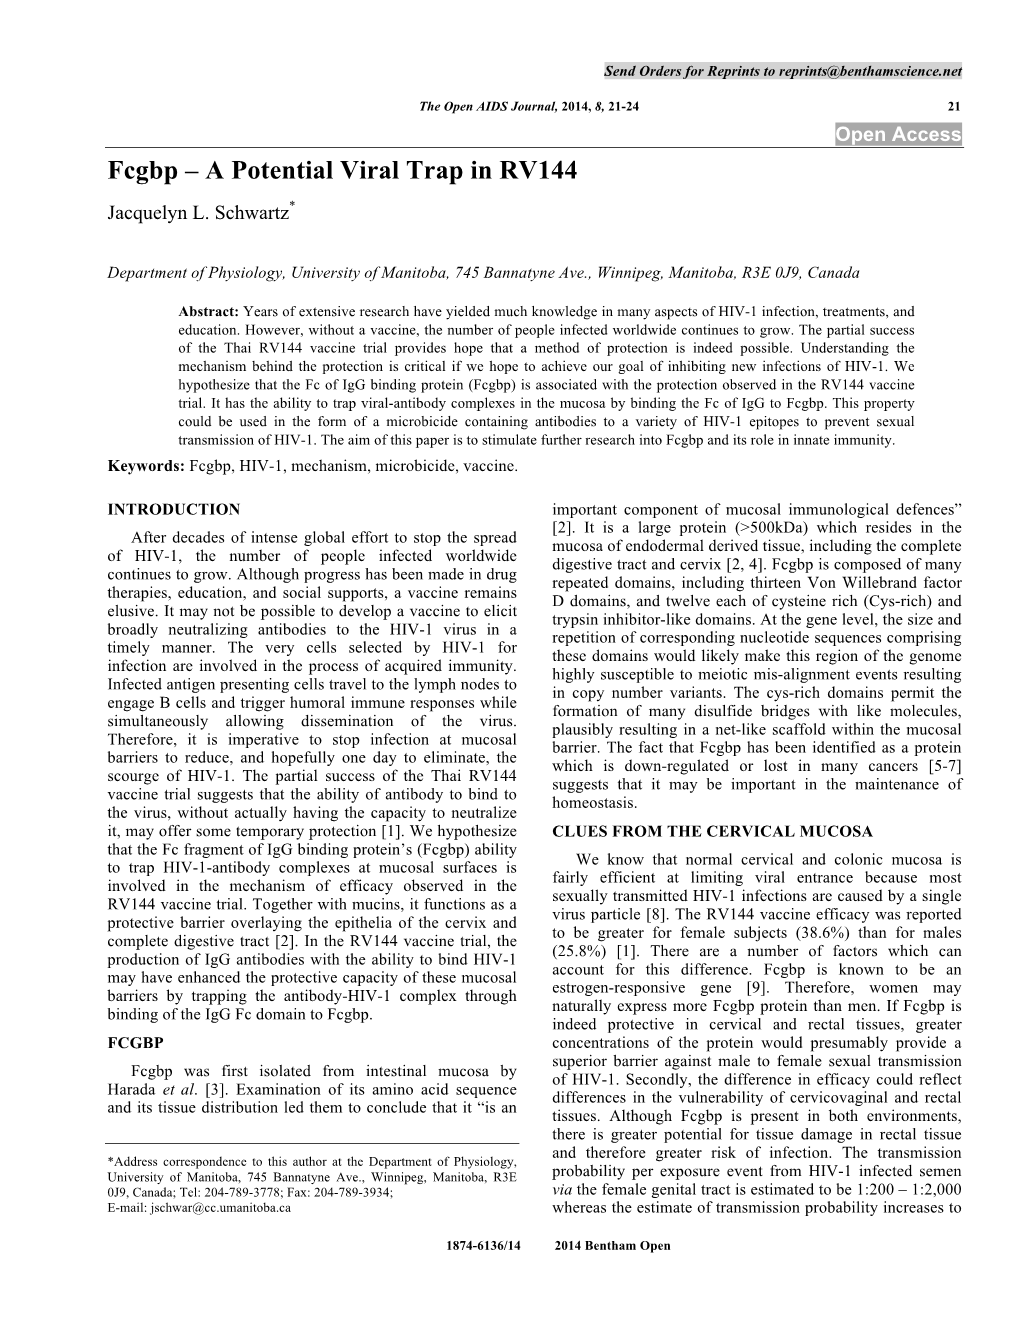 Fcgbp – a Potential Viral Trap in RV144 Jacquelyn L